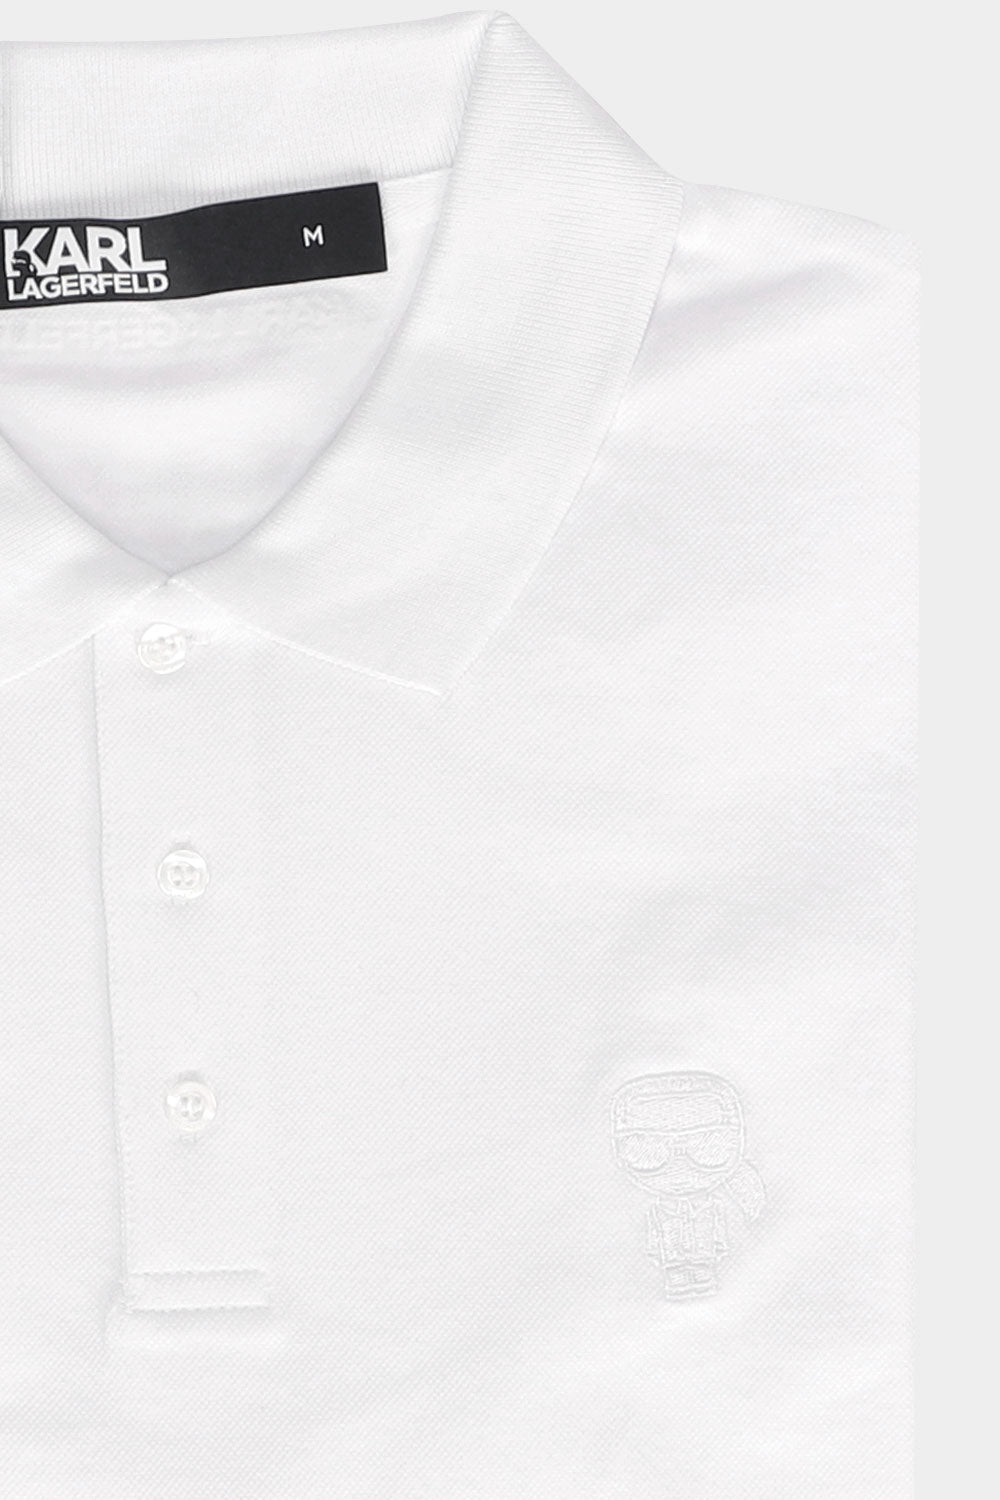 חולצת פולו לגברים בצבע לבן KARL LAGERFELD KARL LAGERFELD Vendome online | ונדום .